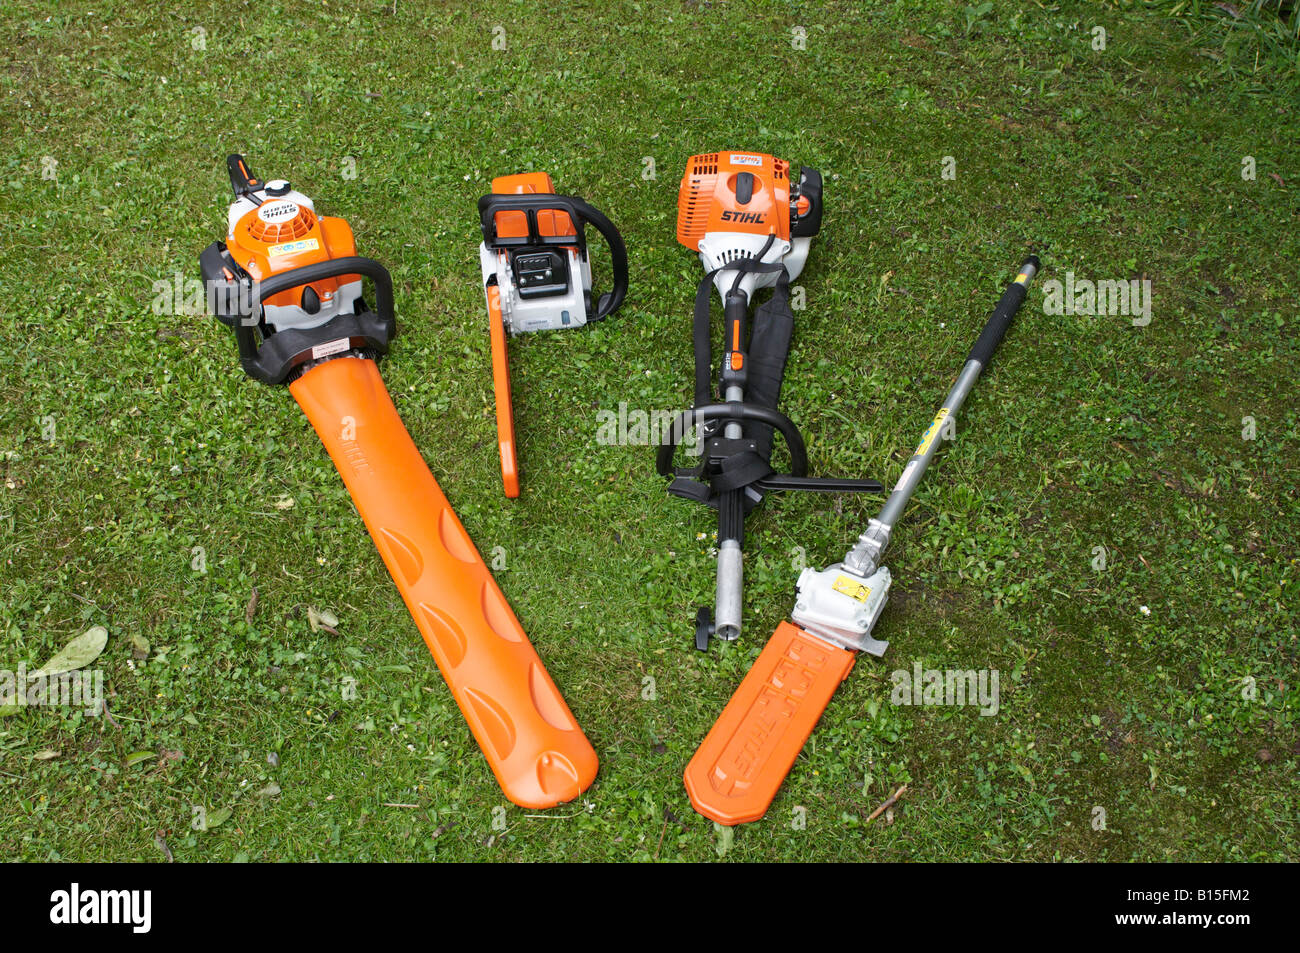 Les outils électriques Stihl alignés sur la pelouse avec gaines de protection sur les surfaces de coupe Stihl MS 180 KM MOTEUR Combi 90 Banque D'Images